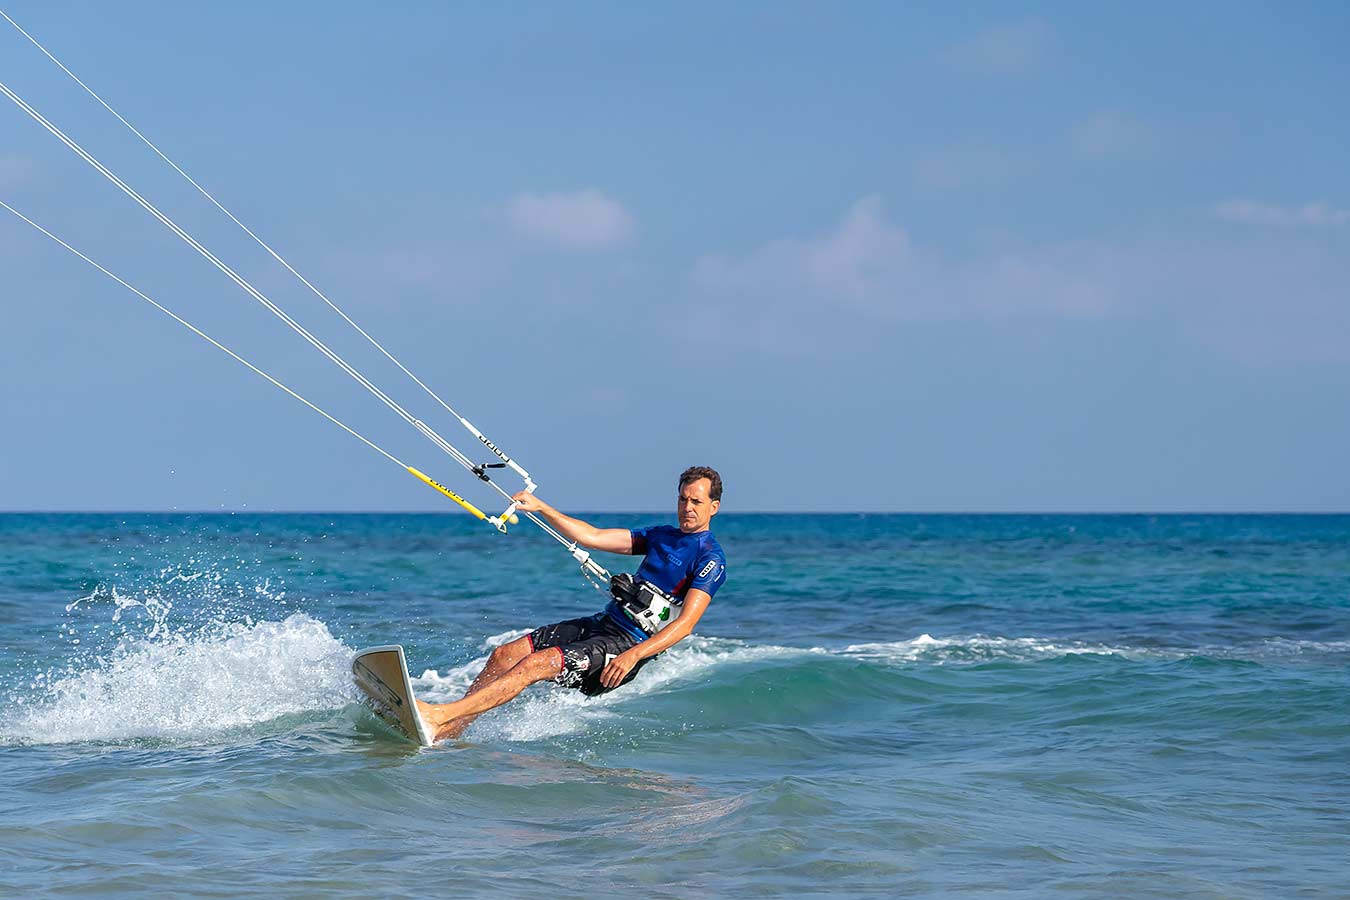 Fotografia de kite surf per al reportatge fotogràfic d'esports de platja a l'estiu, dut a terme per a la Regidoria de Turisme de l'Ajuntament de Torredembarra.